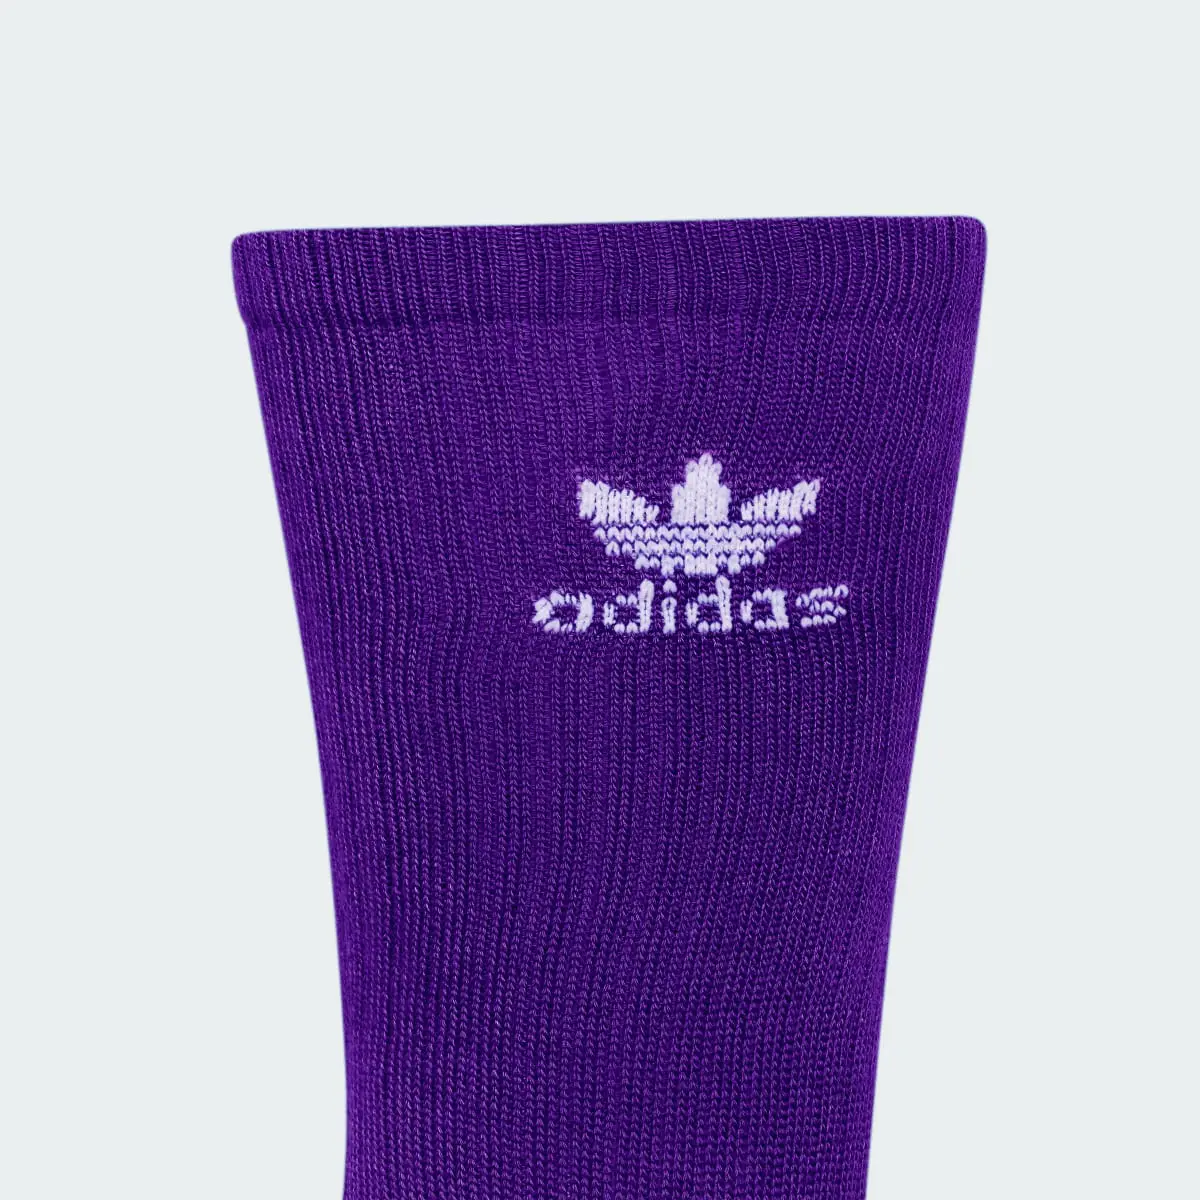 Adidas Trefoil Crew Socks 6 Pairs. 3